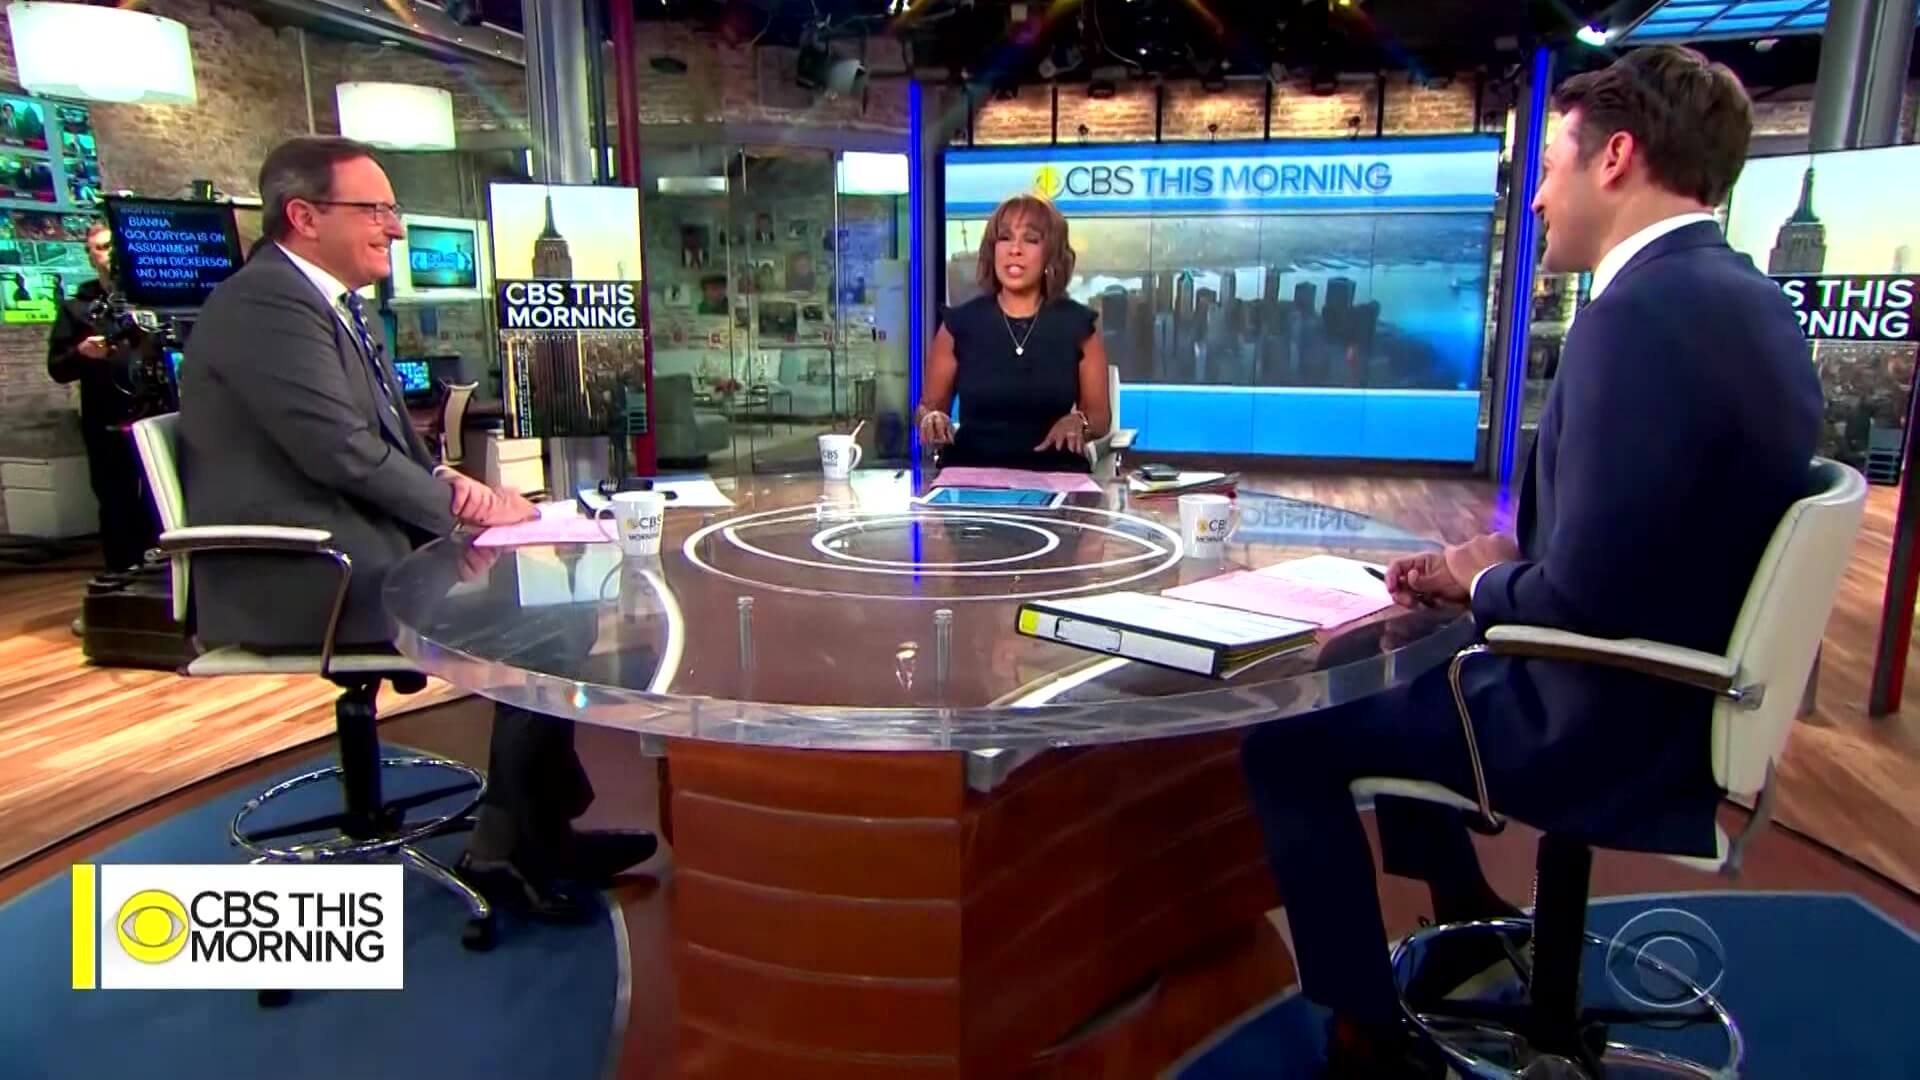 'CBS This Morning', um dos destaques da programação jornalística/variedades da rede norte-americana (Imagem: reprodução / CBS)